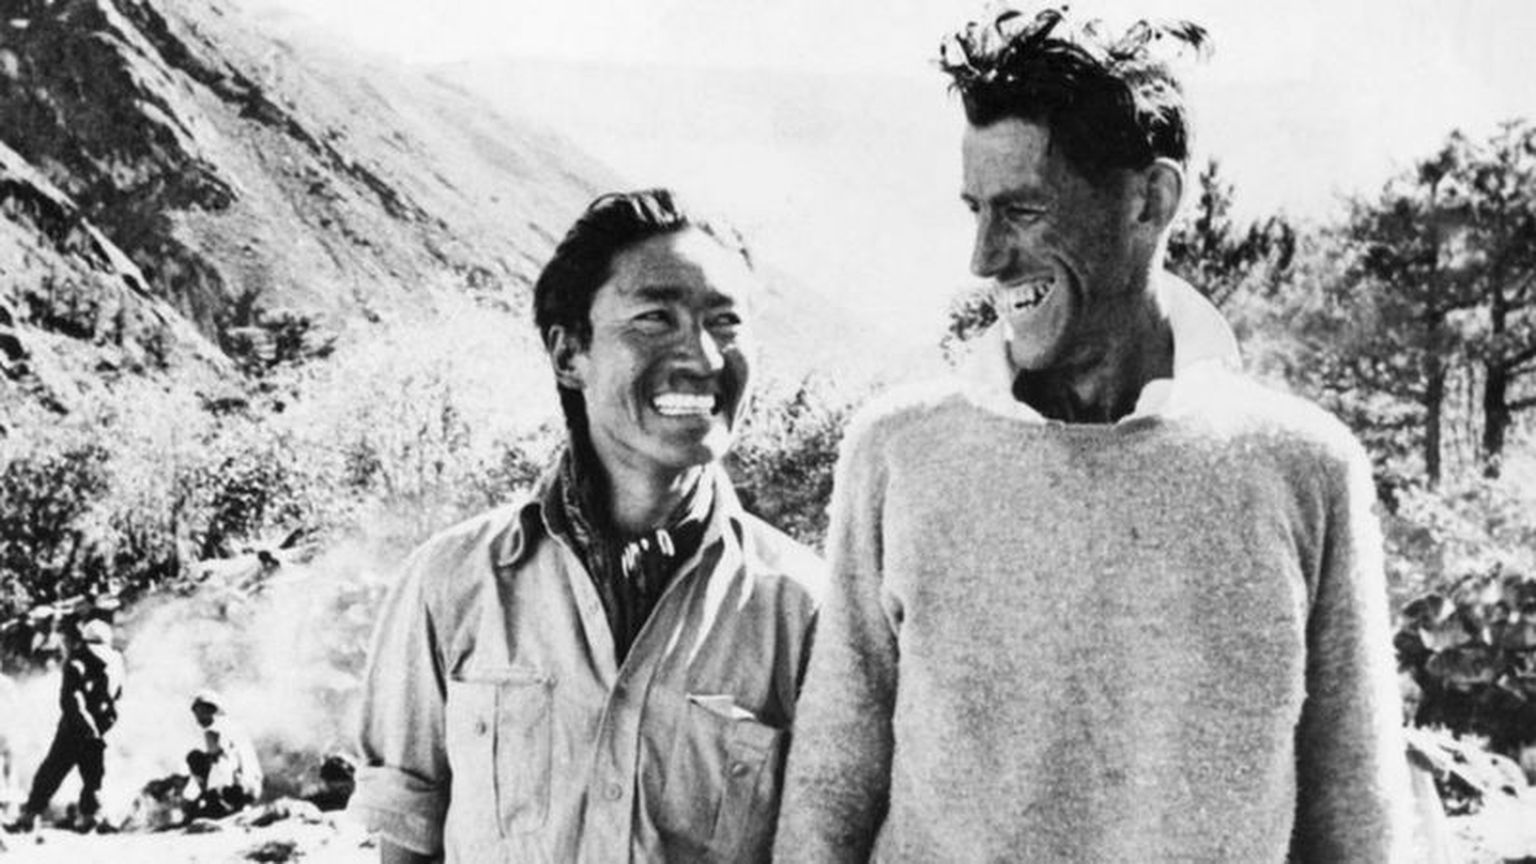 Тенцинг Норгей (тогда ему было 39 лет) и Эдмунд Хиллари (33 года) на фотографии, сделанной вскоре после их исторического восхождения на Эверест.